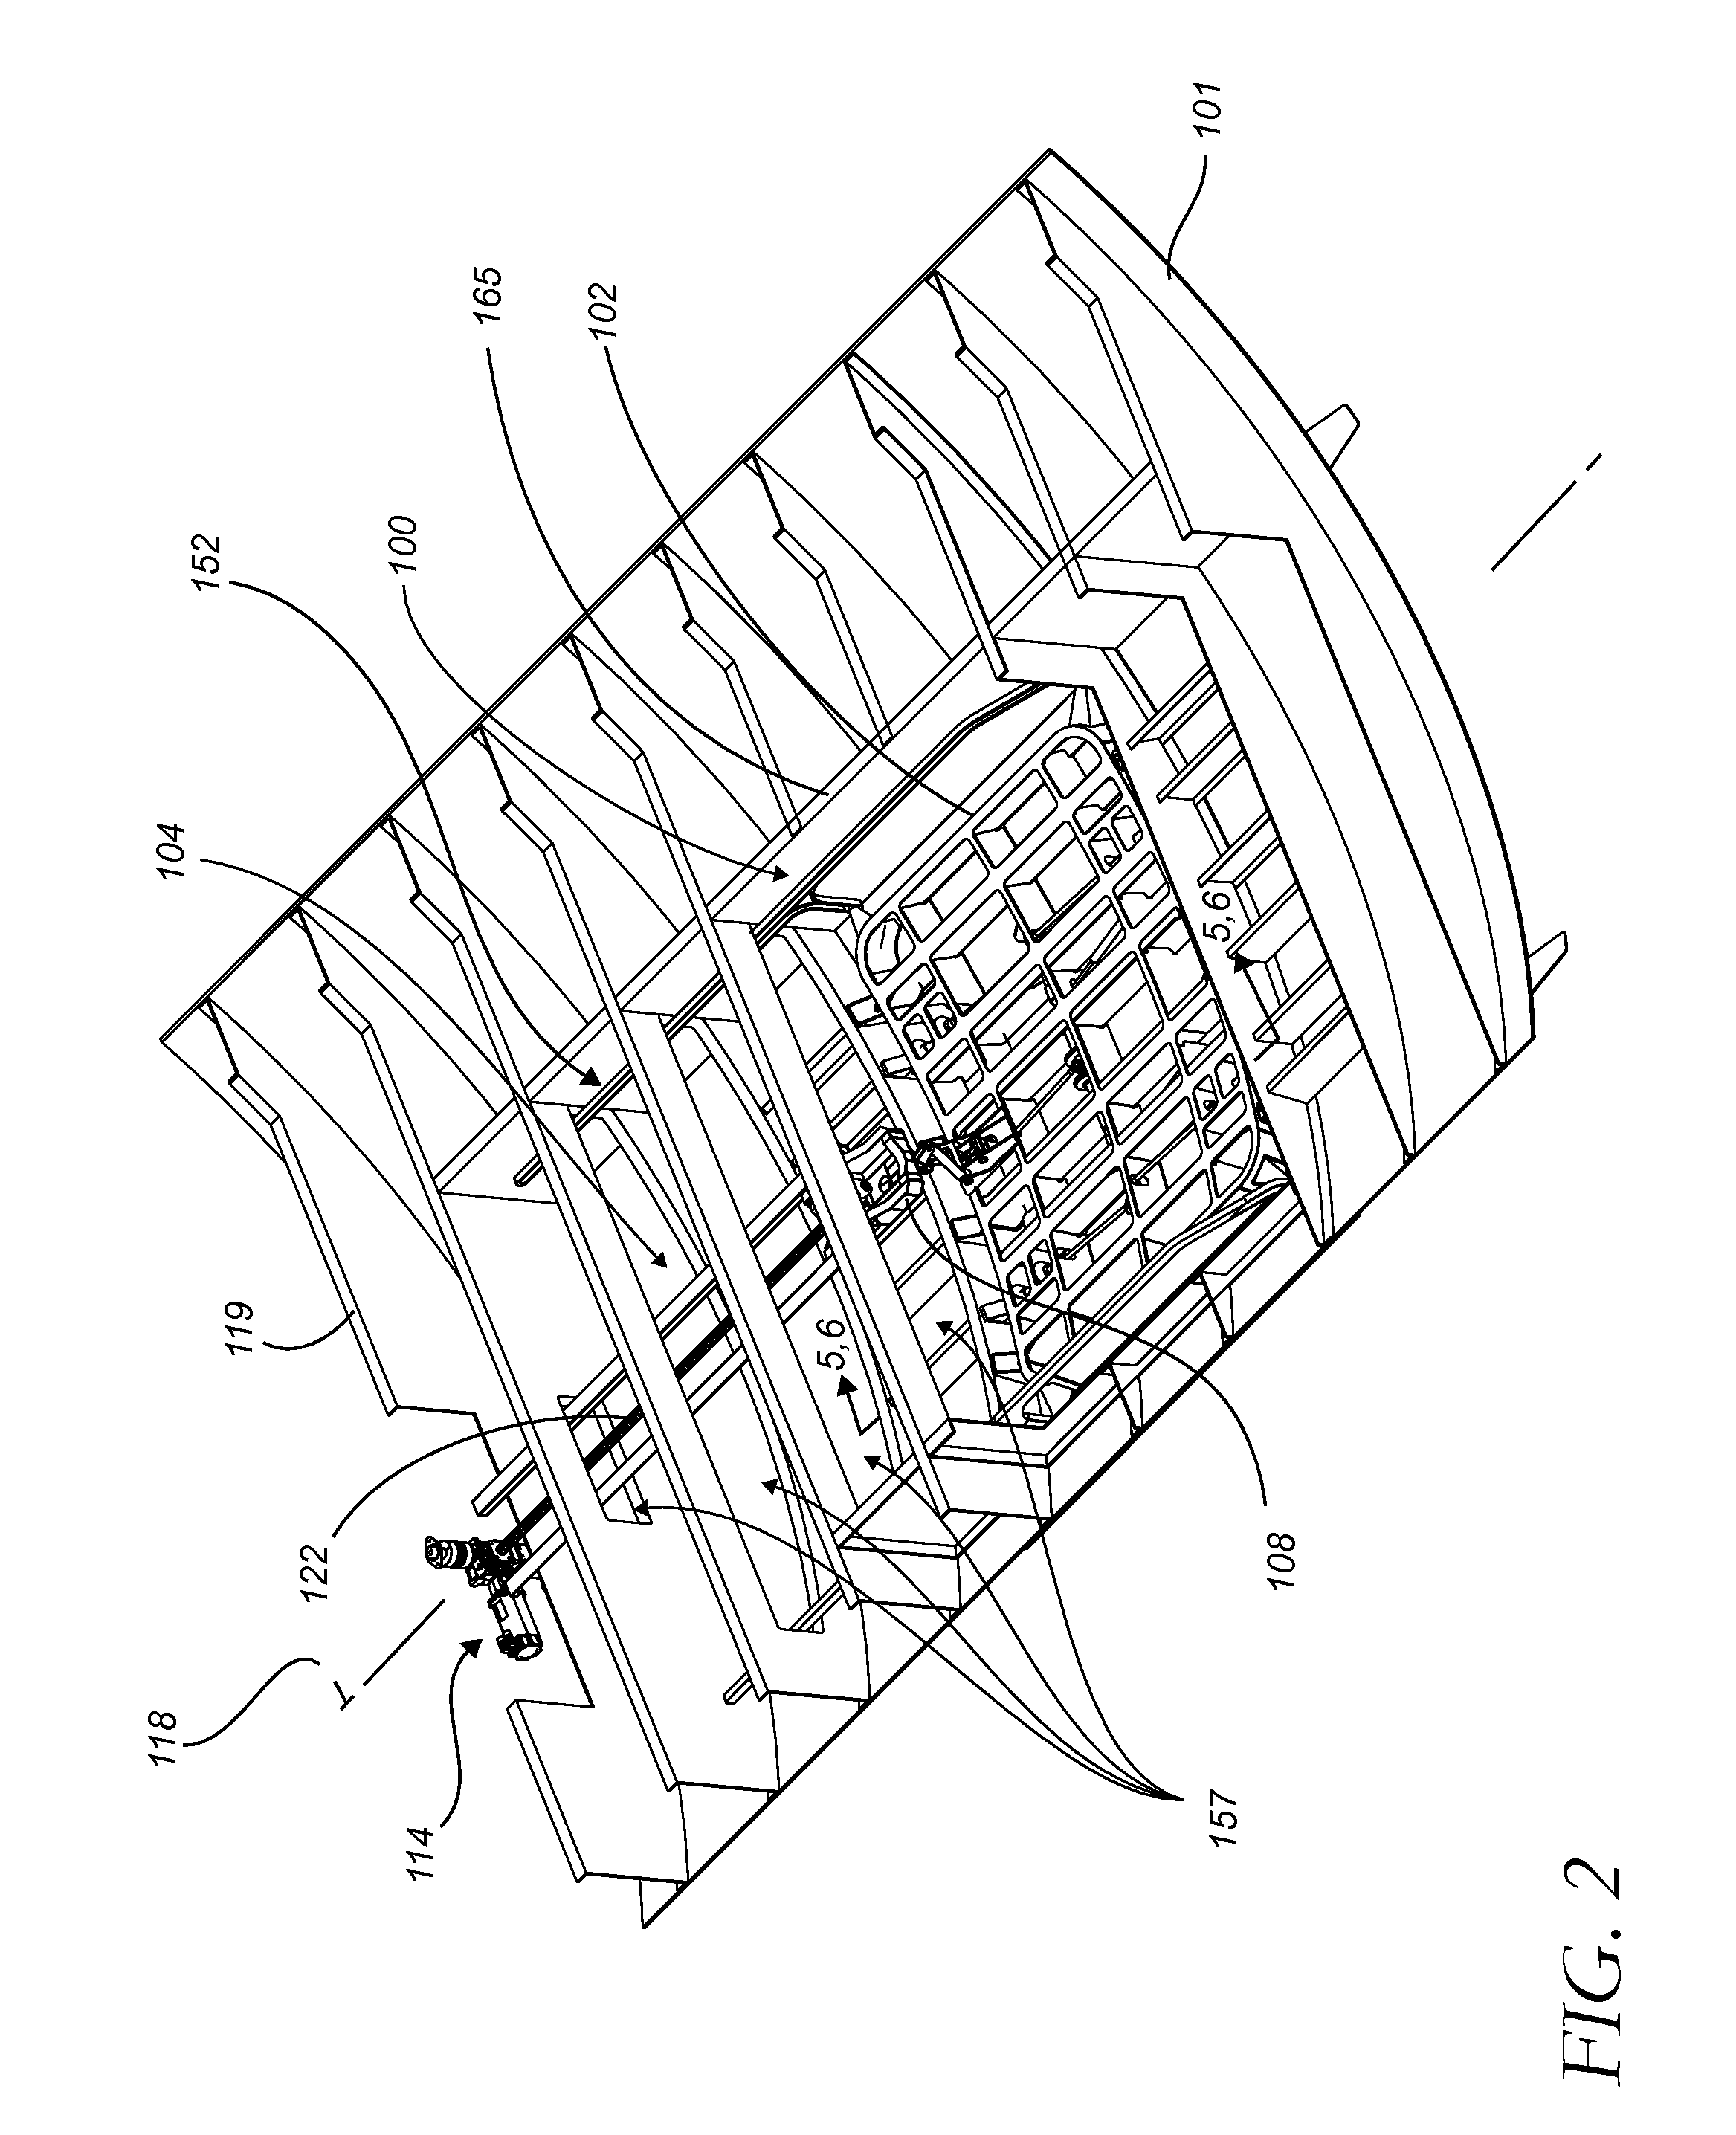 Door apparatus and method